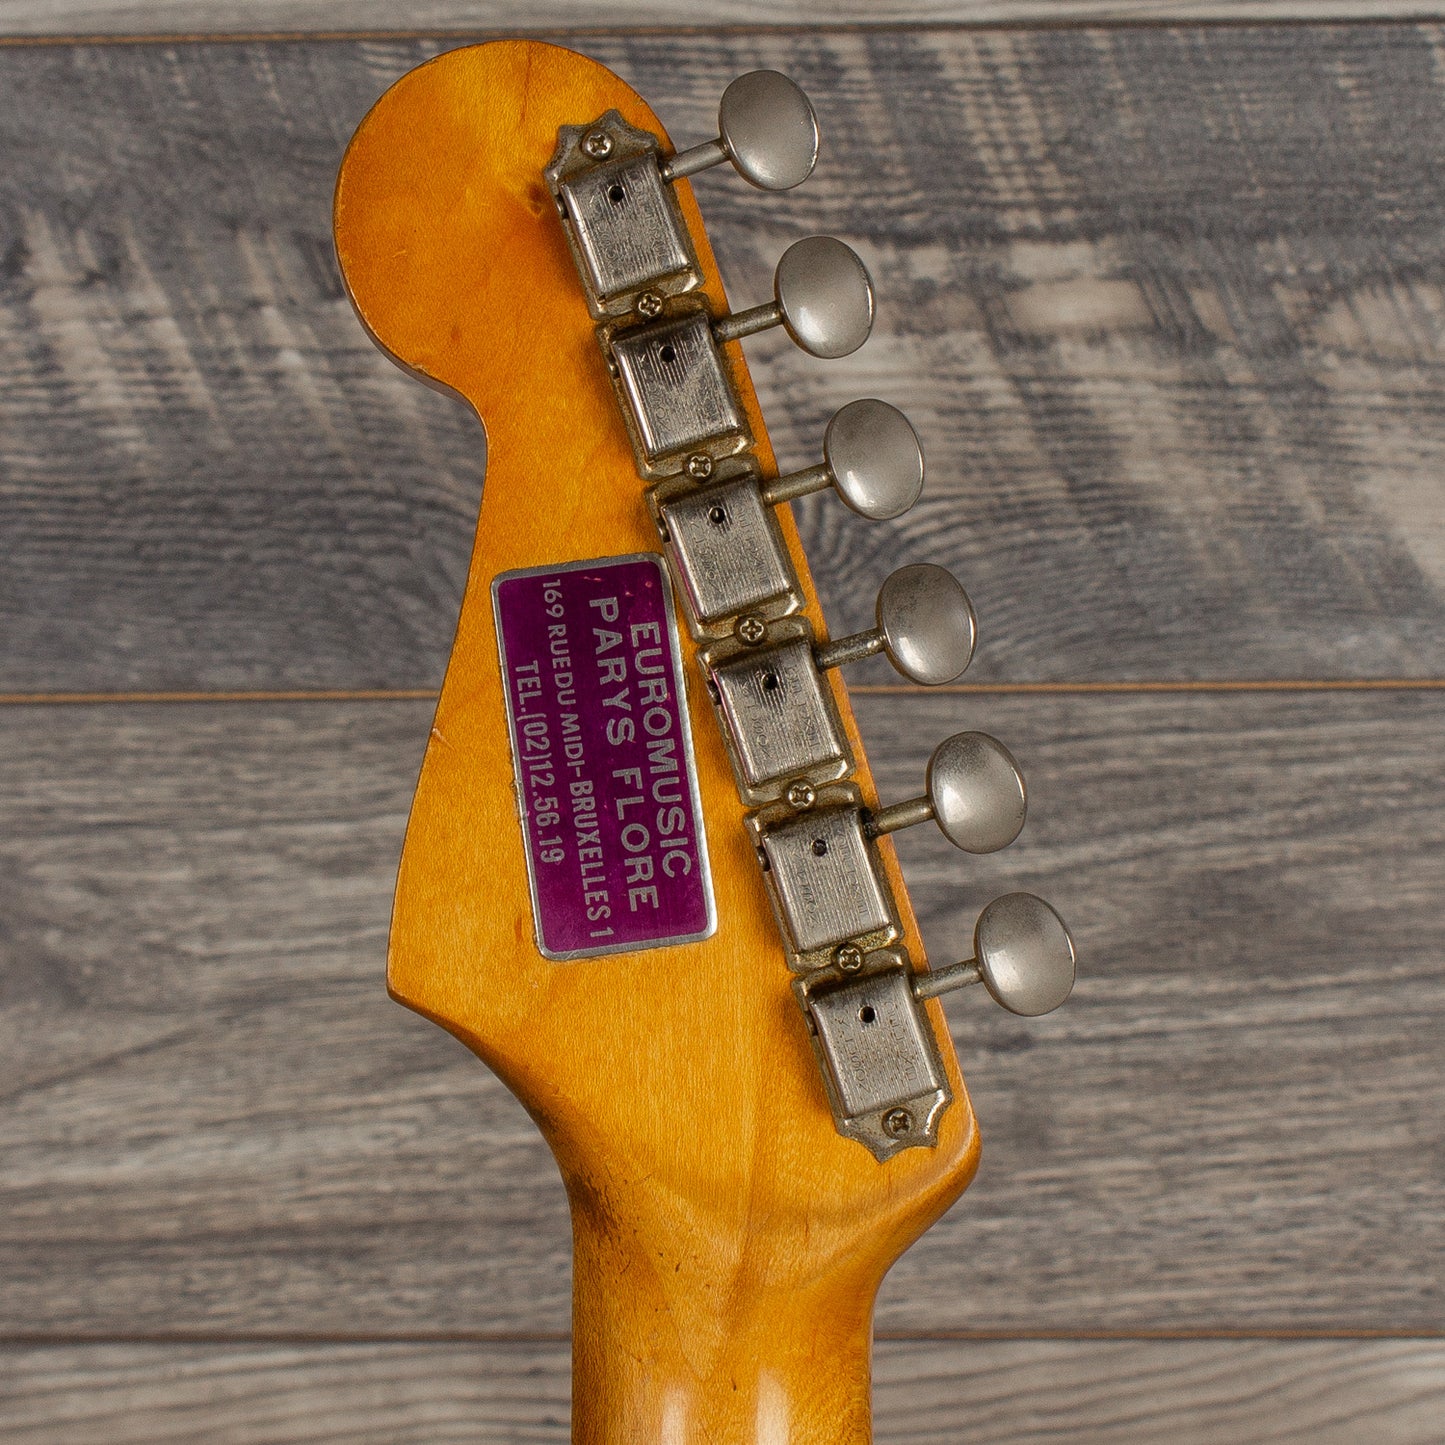 1965 Fender Stratocaster